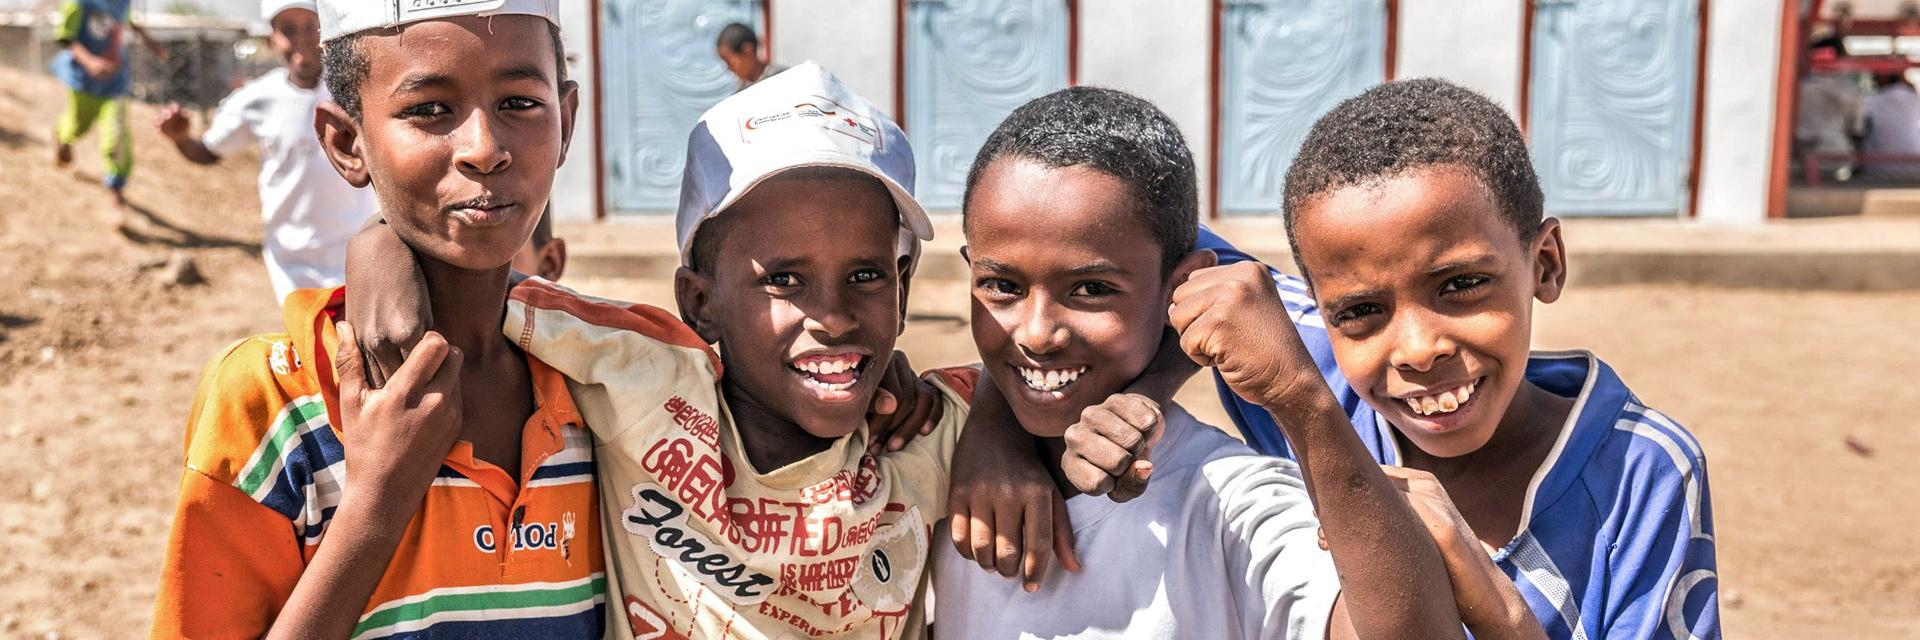 Foto: sudanesische Junge vor Latrinenblock